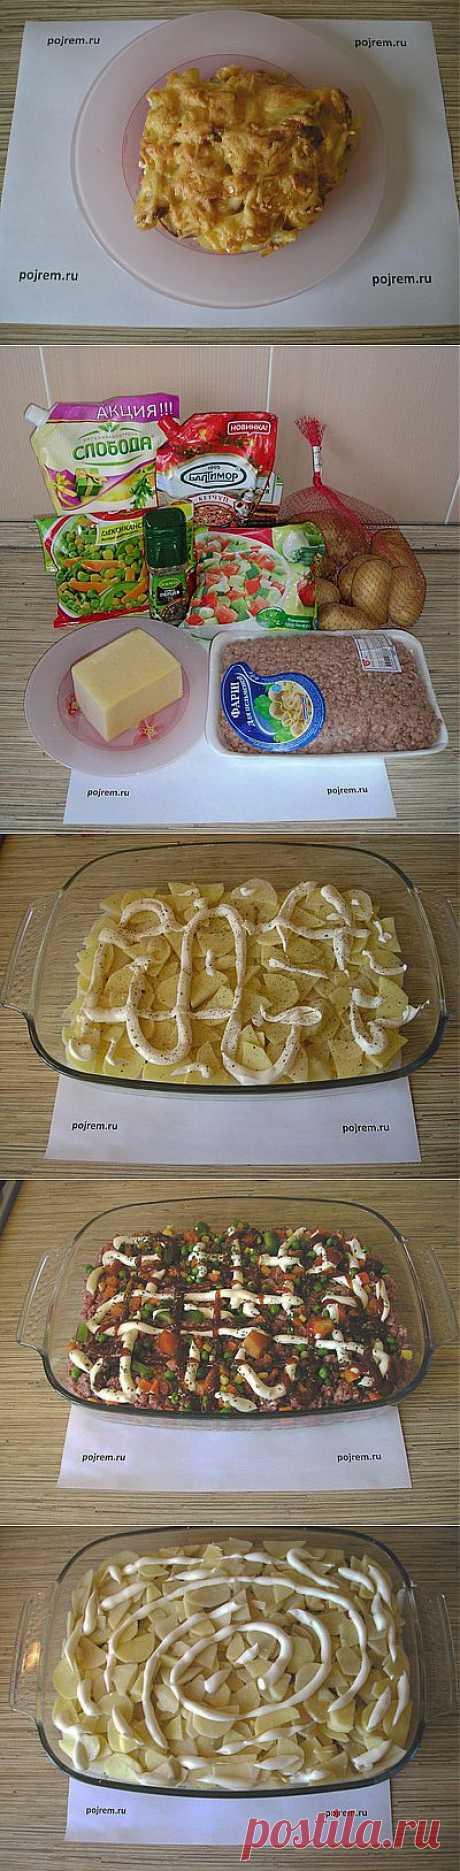 Рецепт картофельной запеканки с фаршем - рецепт с